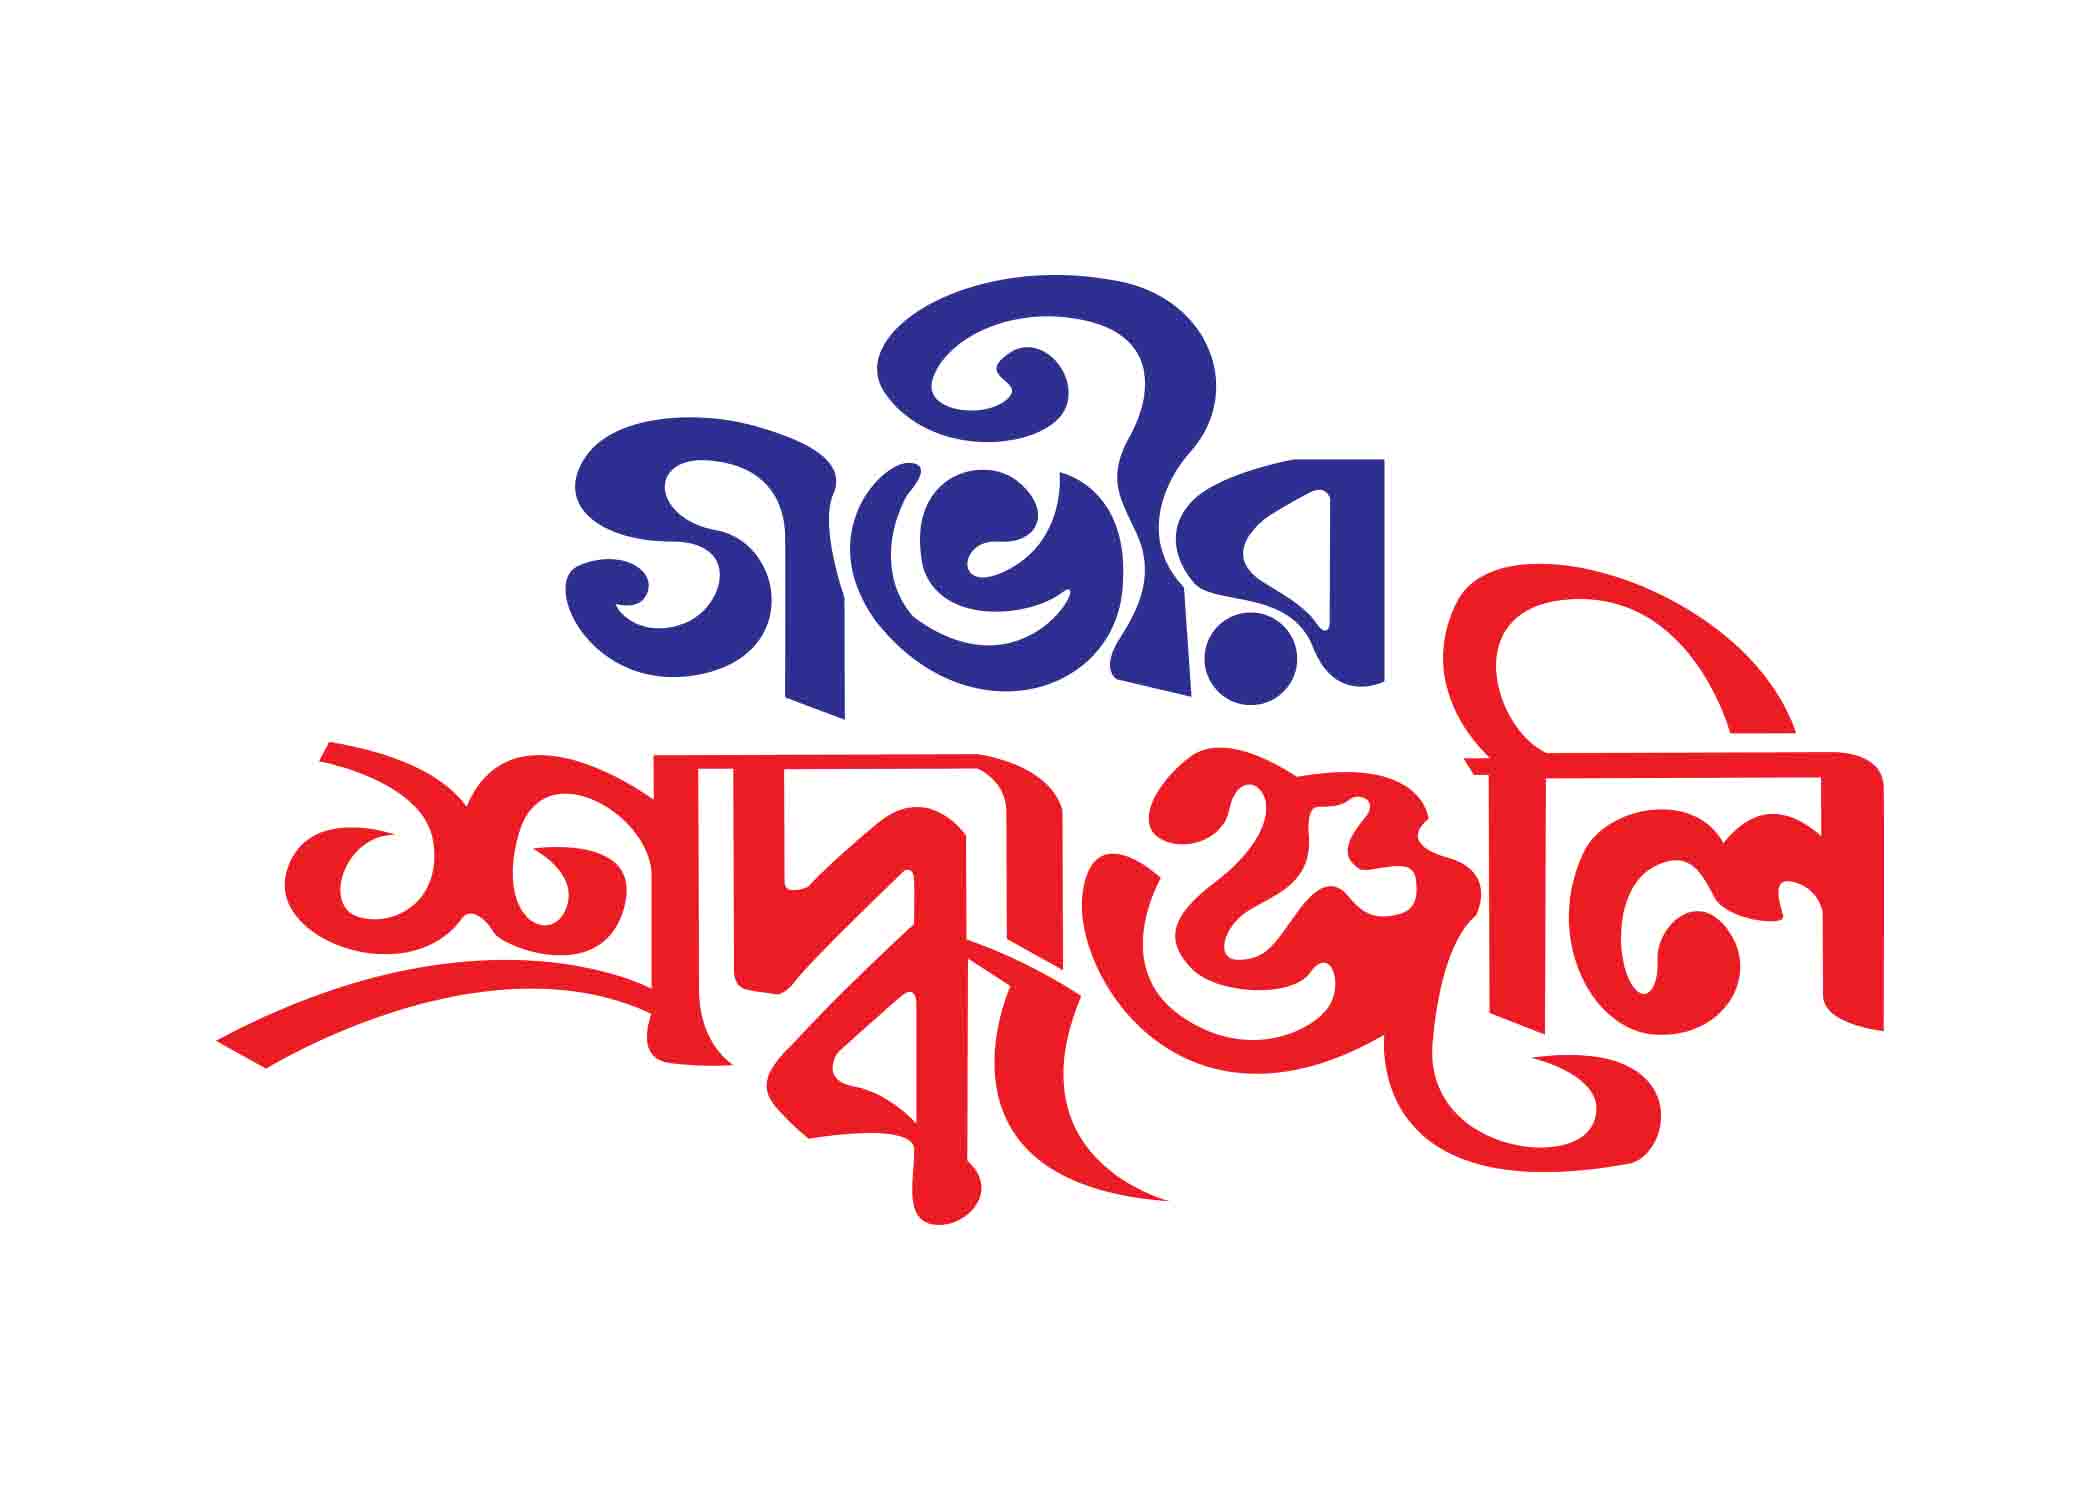 গভীর শ্রদ্ধাঞ্জলি টাইপোগ্রাফি । Bangla Typography PNG